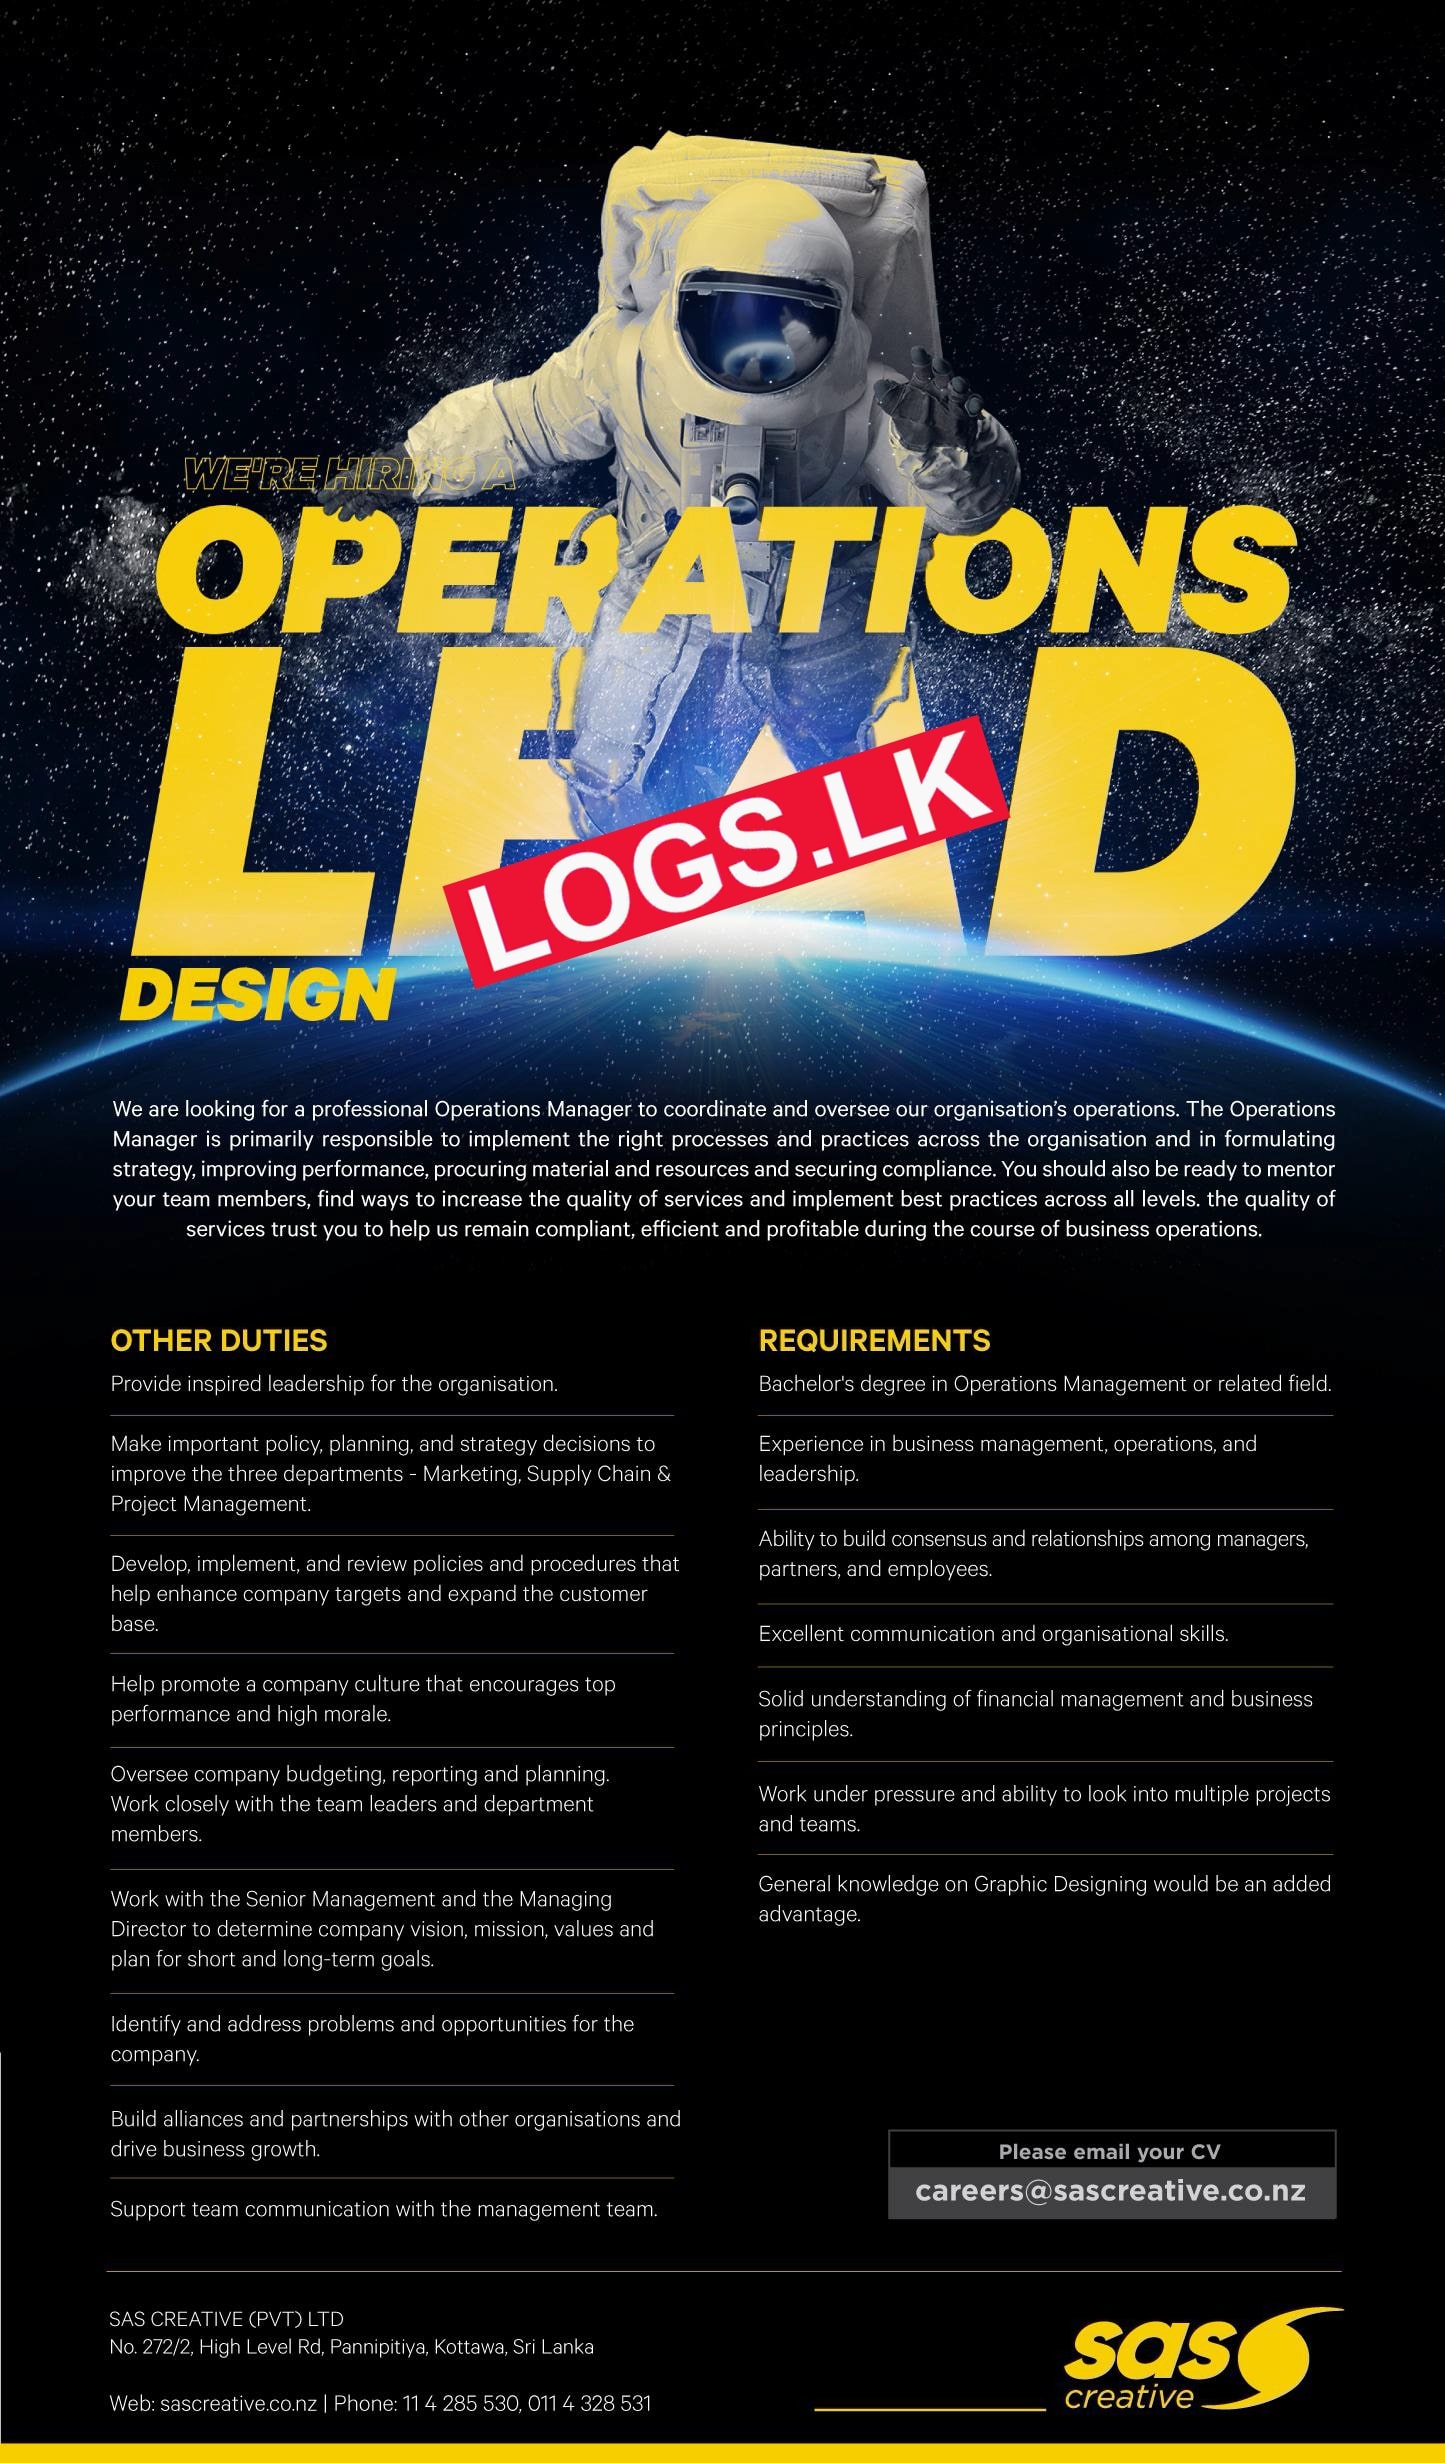 Operations Lead (Design) Job Vacancy at SAS Creative (Pvt) Ltd Jobs Application